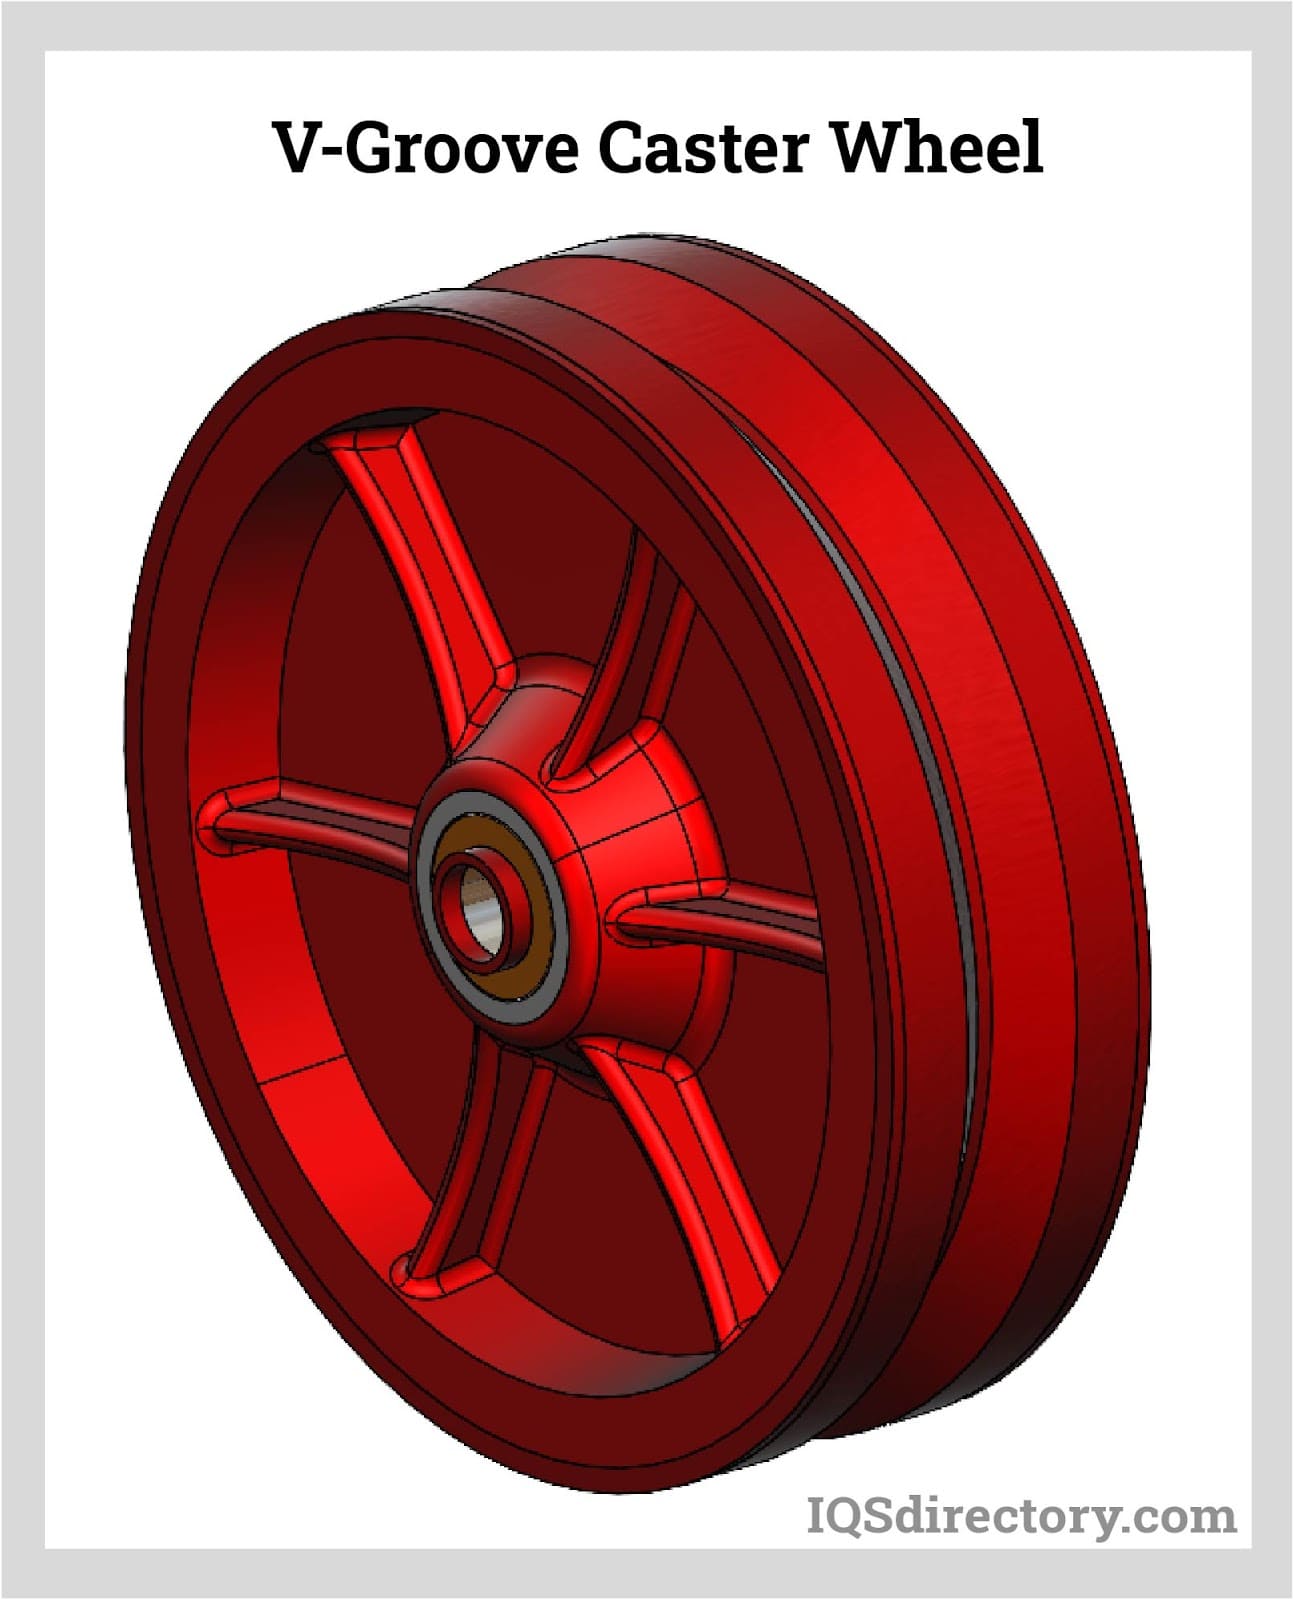 V-Groove Caster Wheel